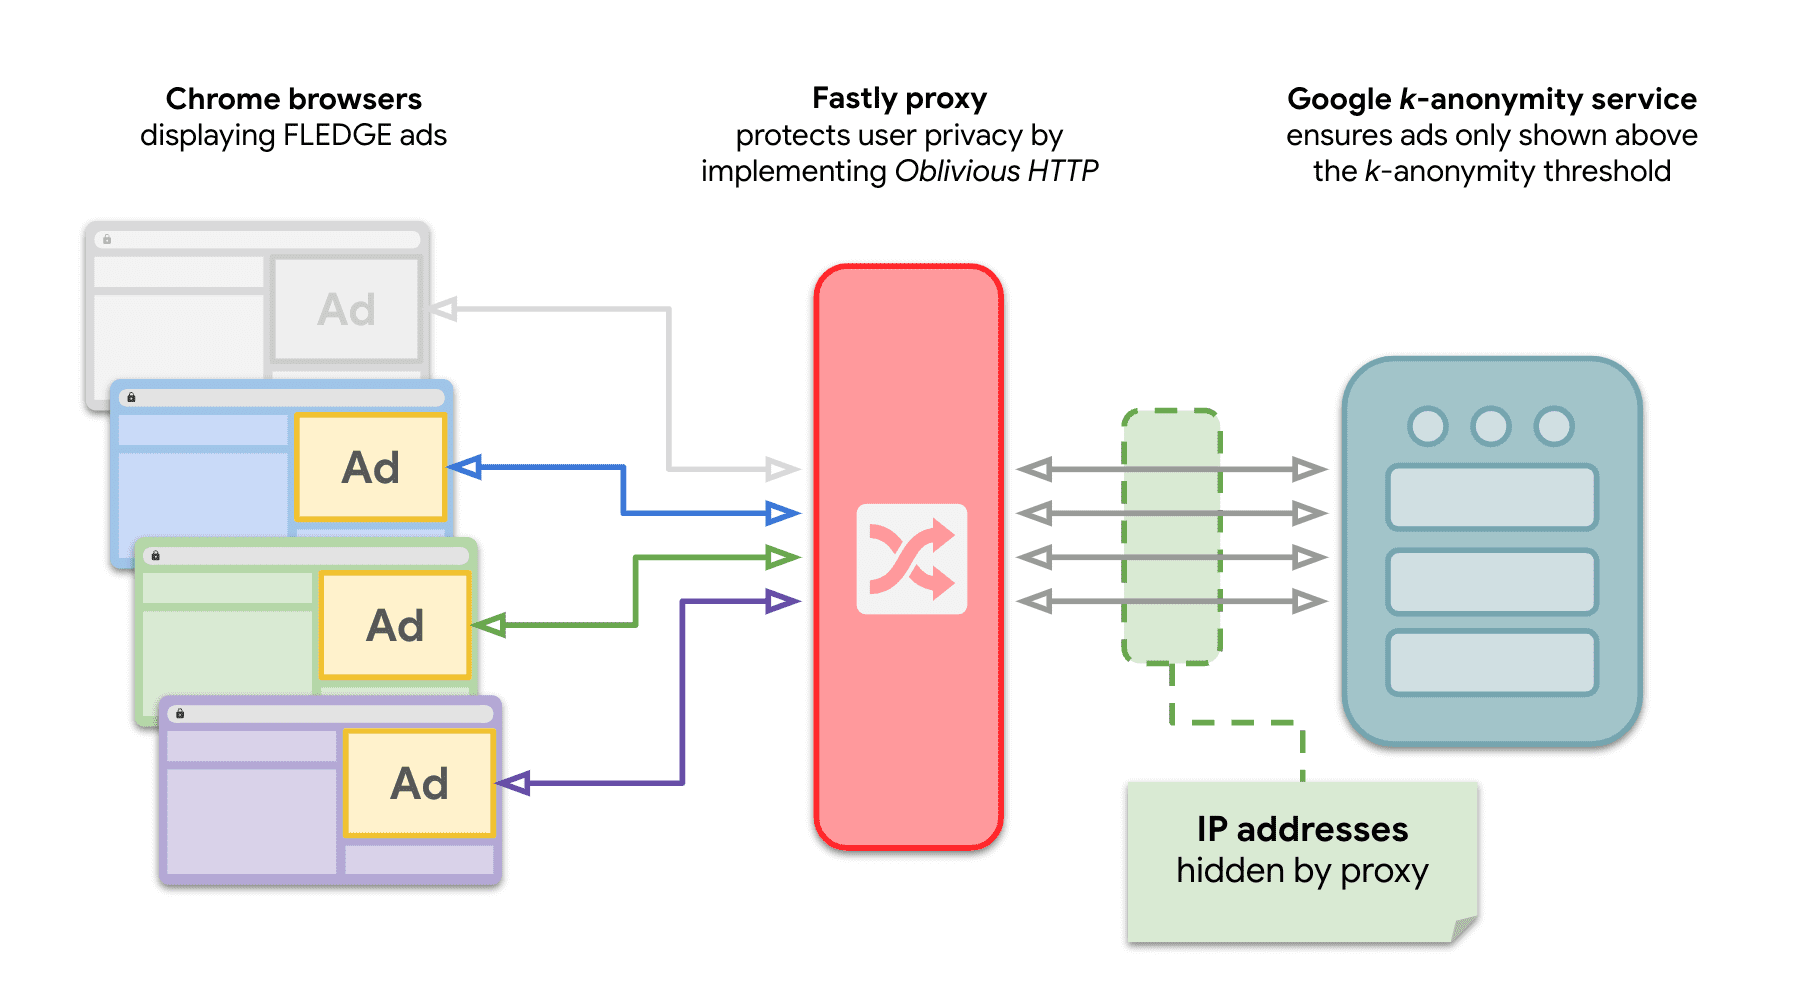 Diagram pokazujący, że wiele witryn w Chrome wysyła żądania do serwera k-anonimowości, aby wyświetlać reklamy FLEDGE z przekaźnikiem OHTTP pomiędzy nimi.